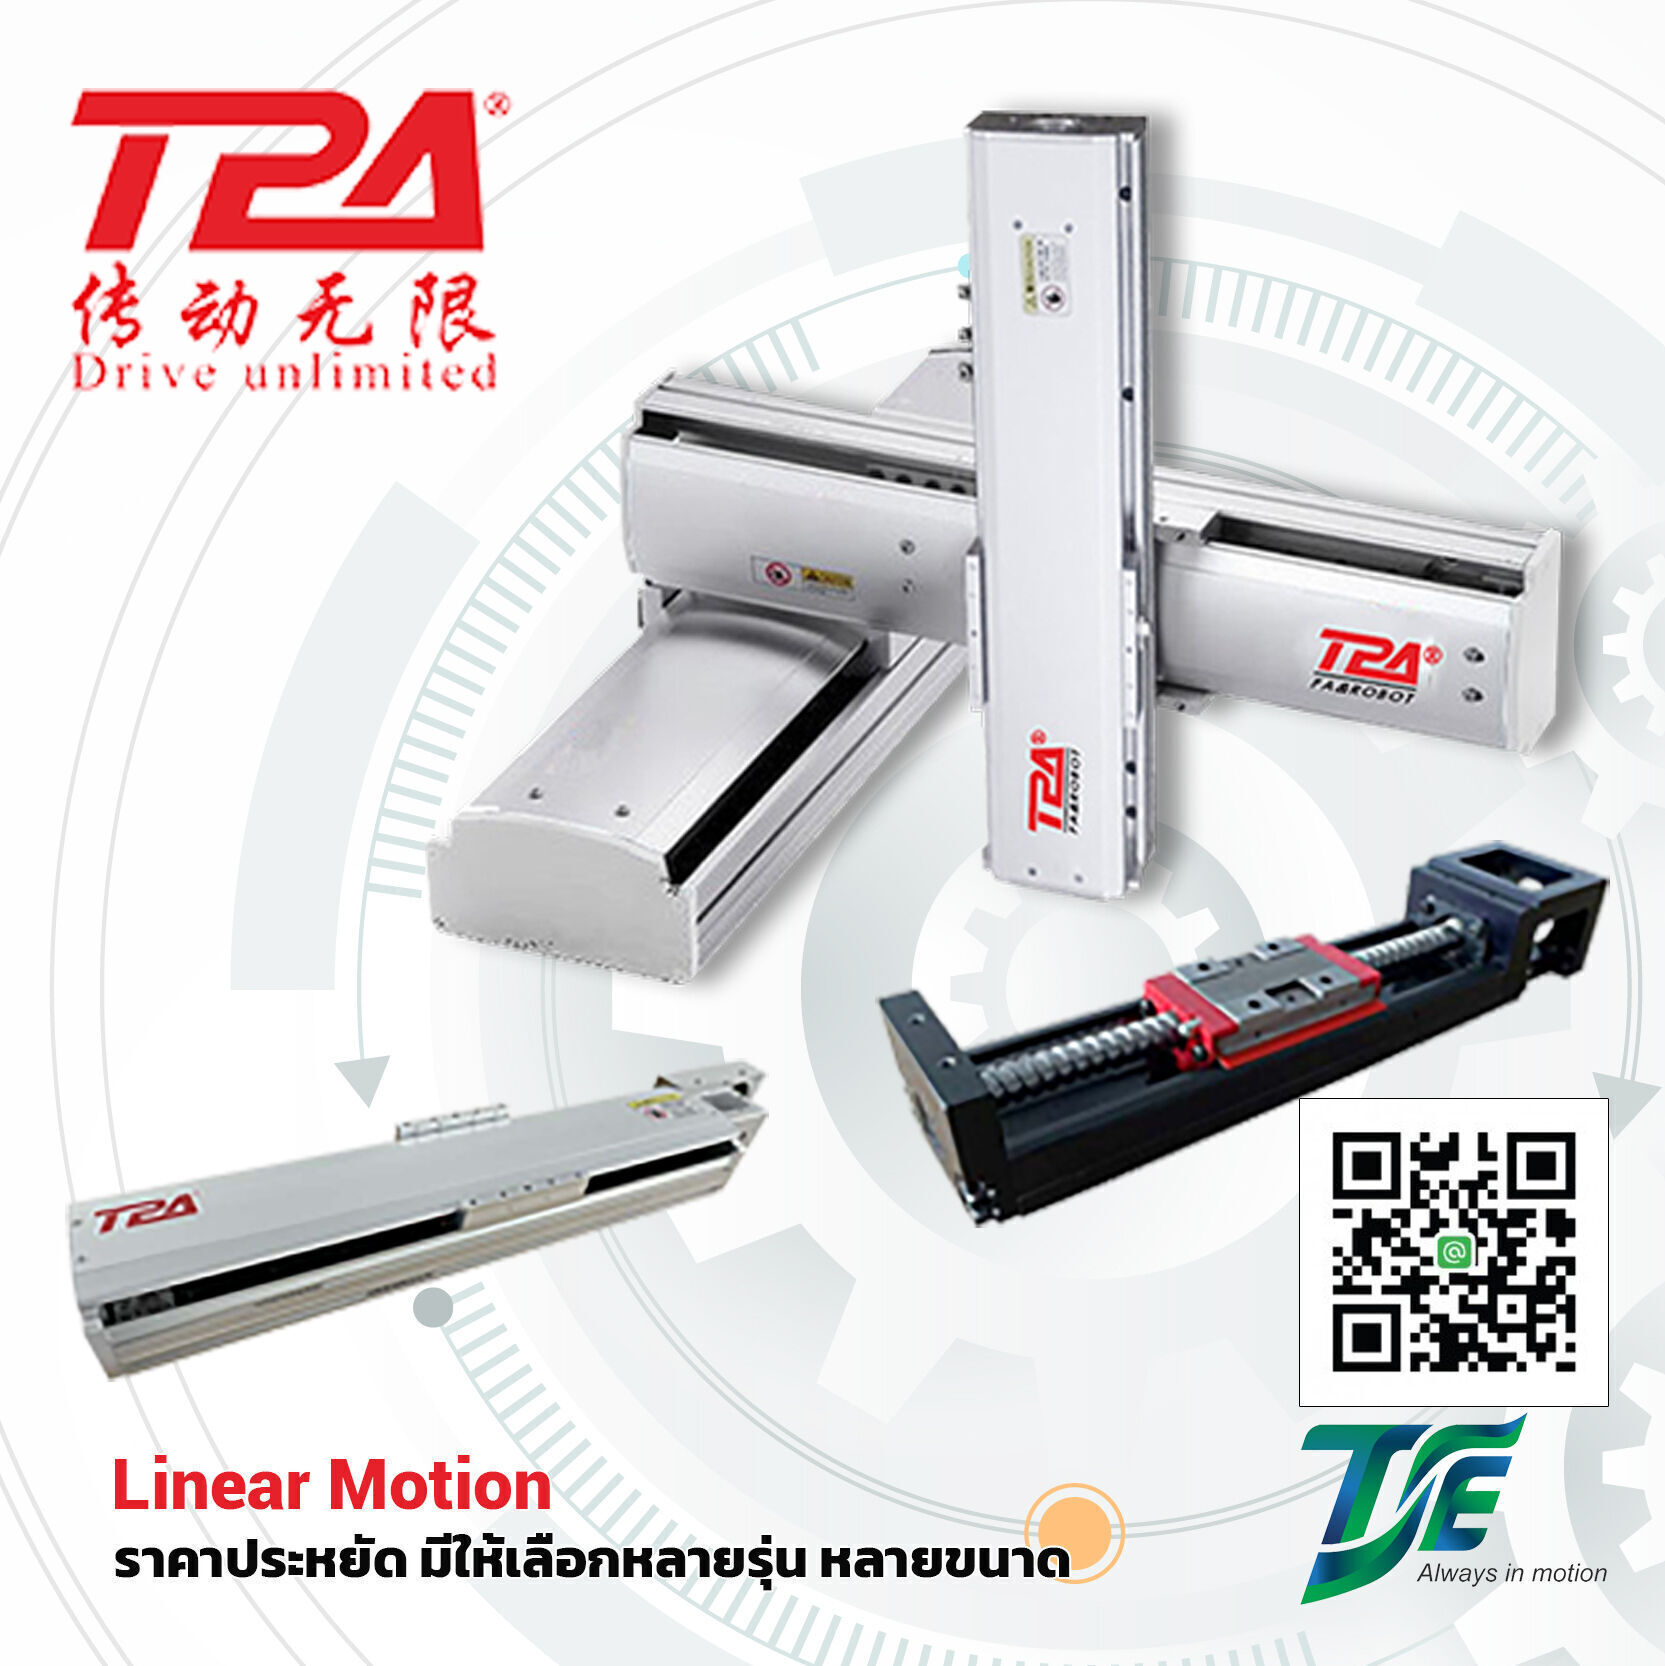 TPA RobotLinear Motion ราคาประหยัด มีให้เลือกหลายรุ่น หลายขนาด